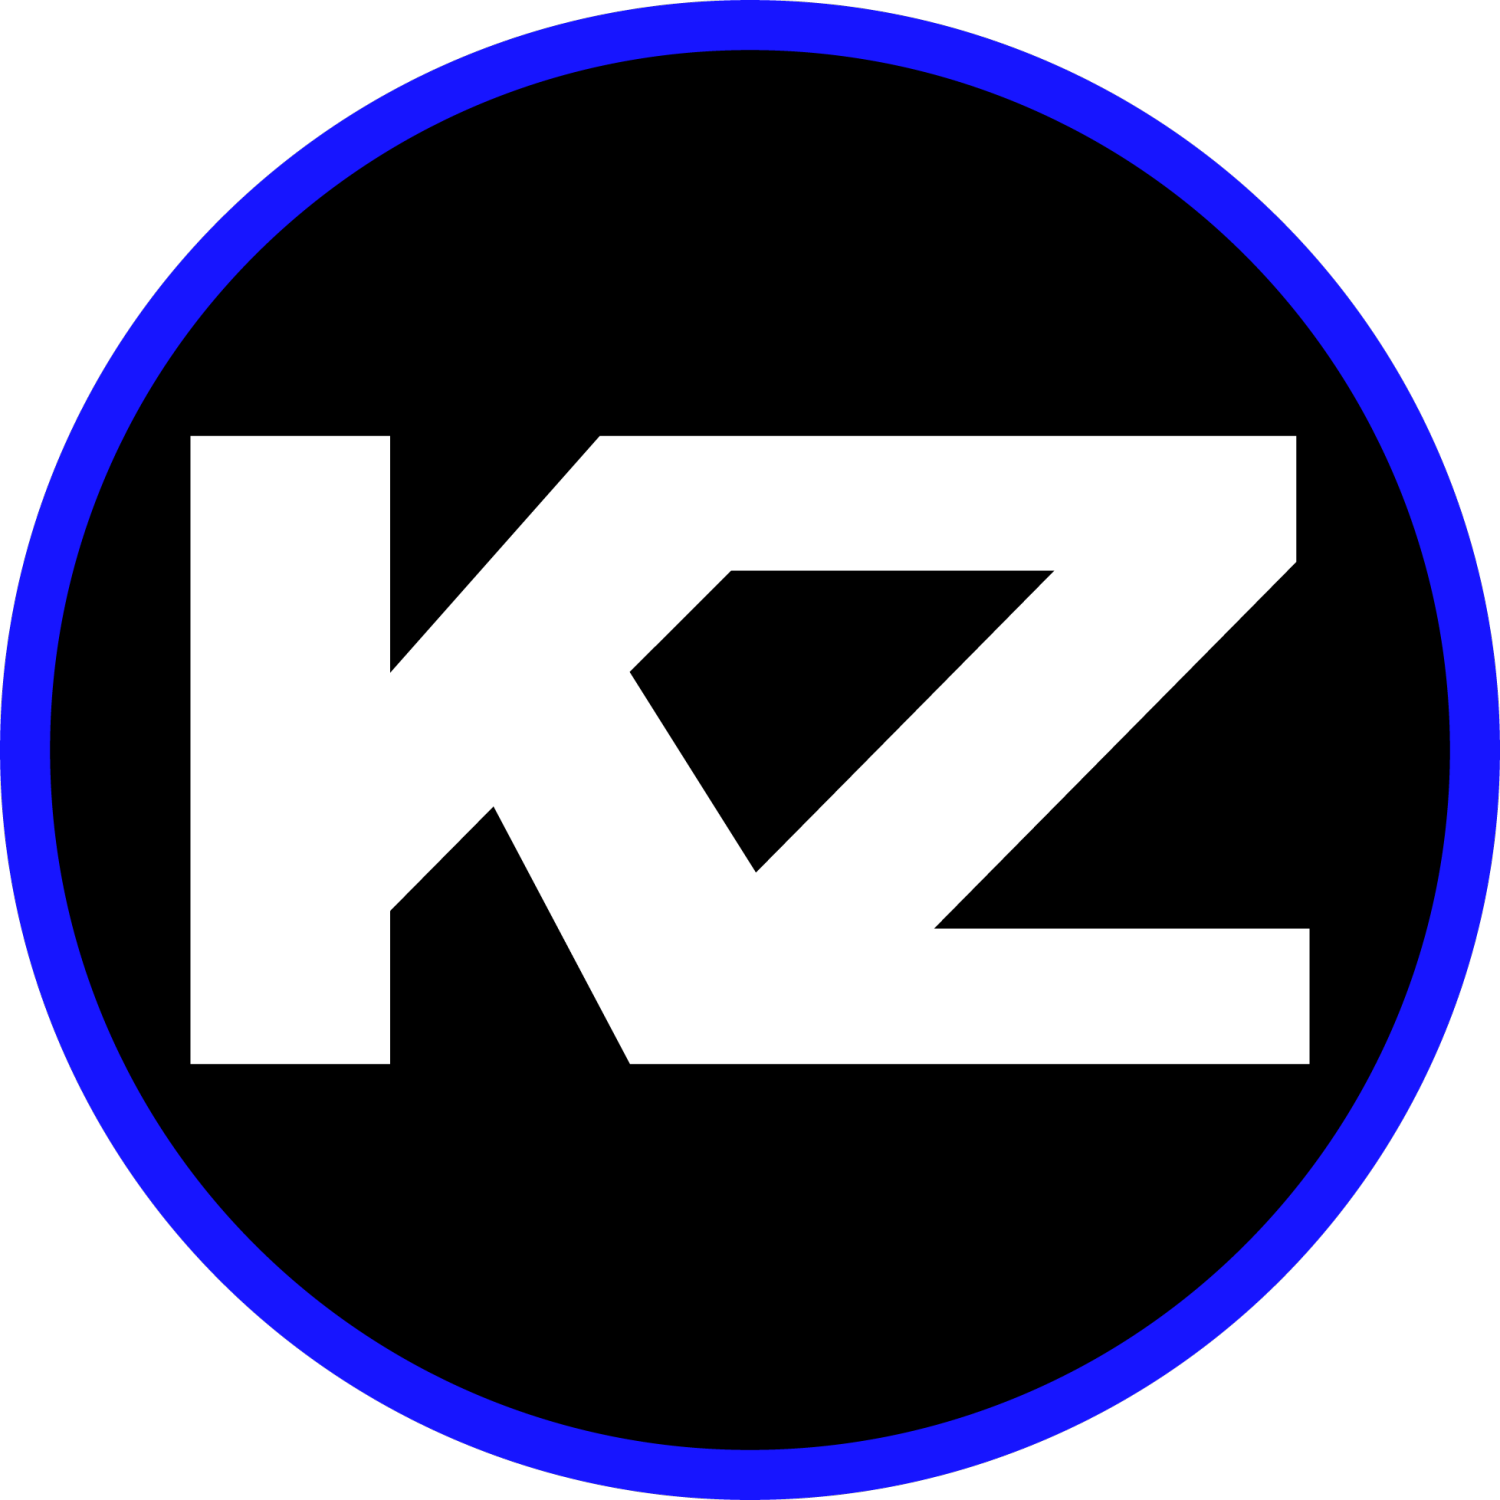 Kzsq kz. Значок kz. Кз логотип. Эмблема k. z. Надпись kz.